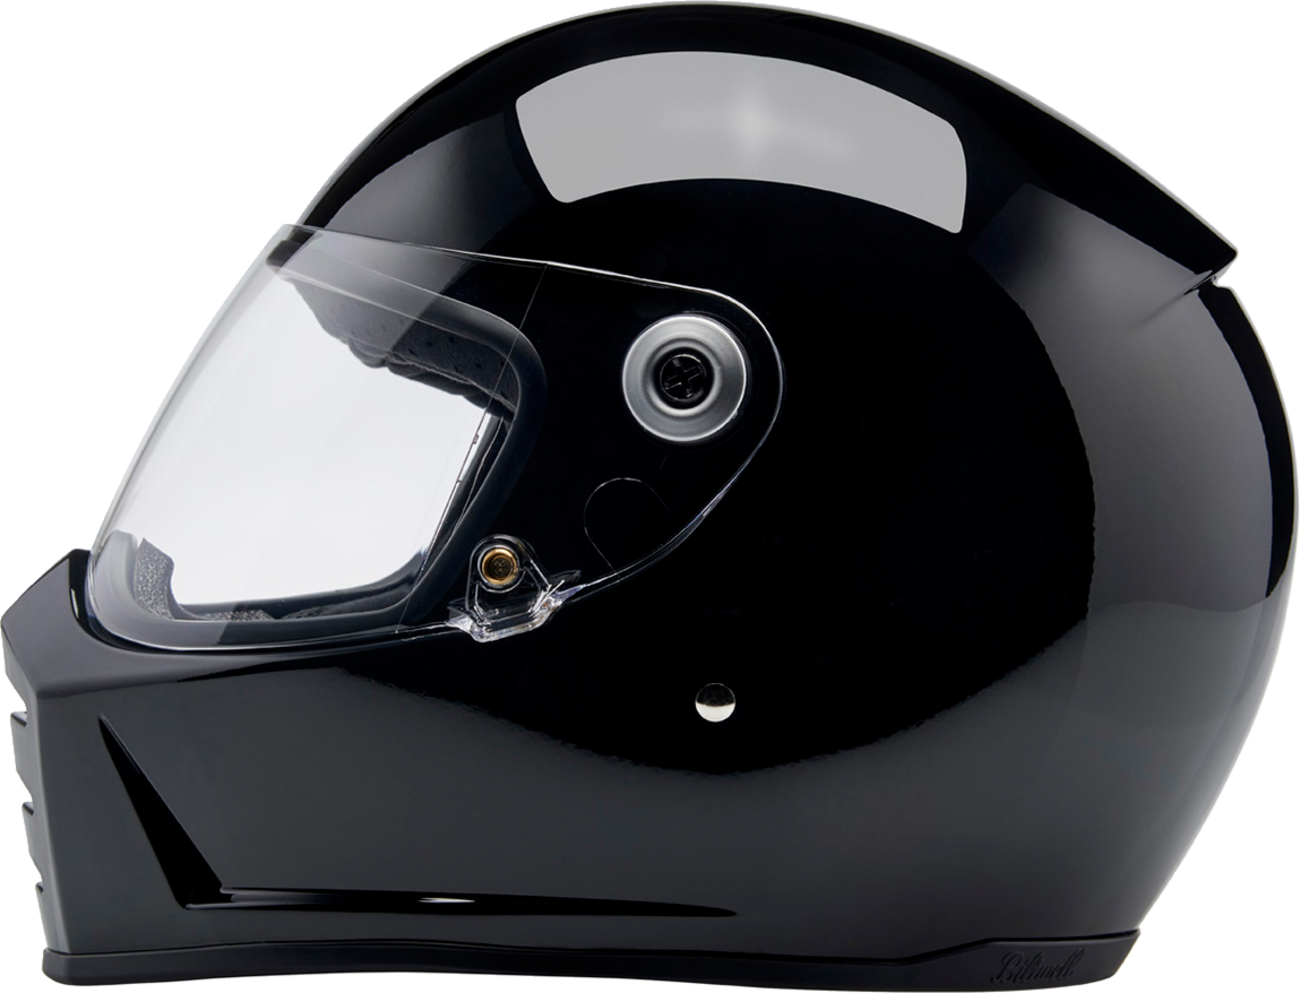 BILTWELL Lane Splitter Helmet - Gloss Black - Small 1004-101-502